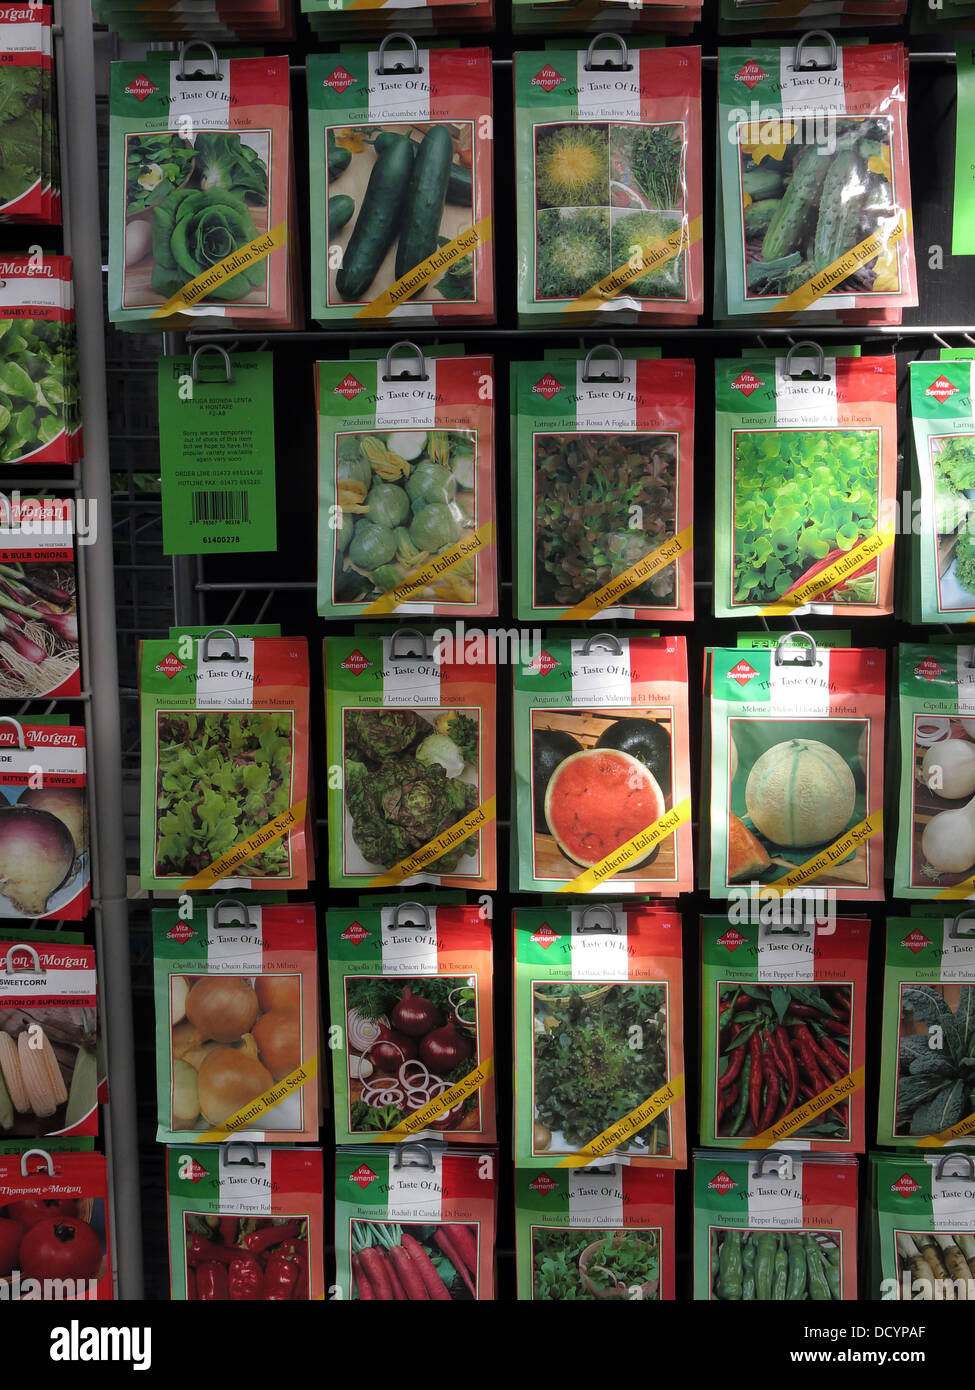 Vita Sementi allotissement jardin marque en paquets de graines jardin centre / supermarché, maintenant populaire encore e Grande-Bretagne Banque D'Images